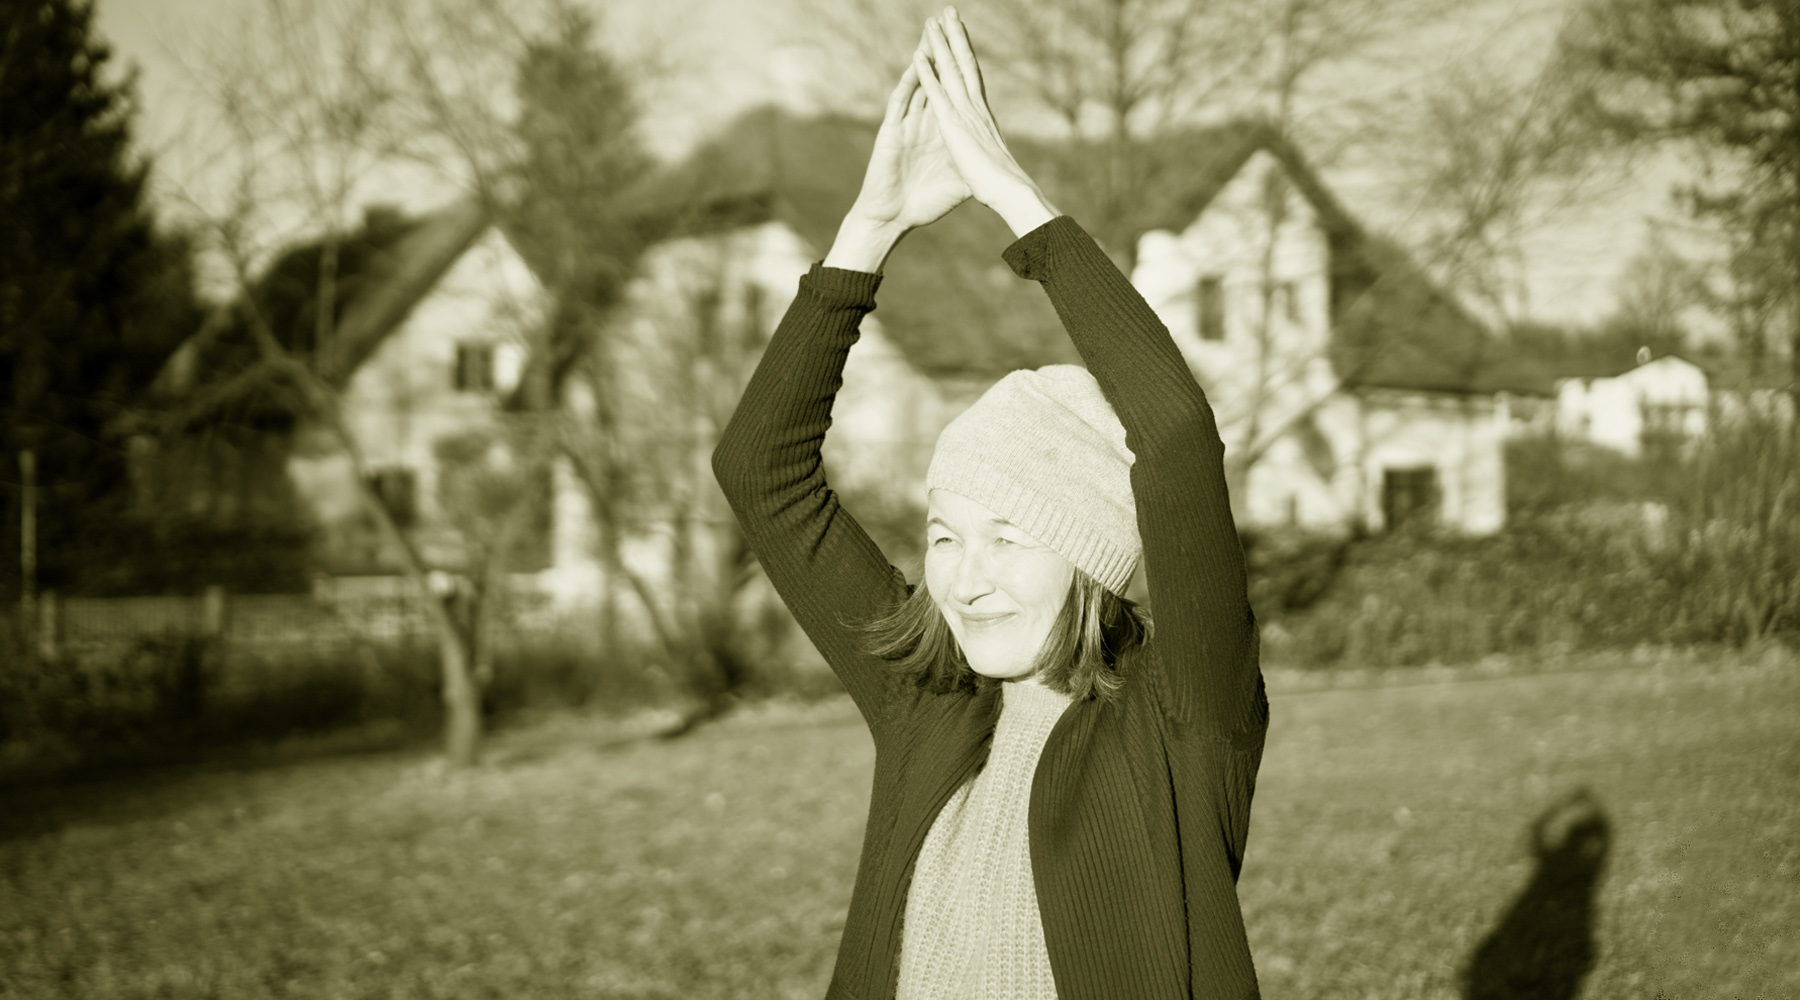  Neu im Yoga-Blog: 8. März – Internationaler Frauentag